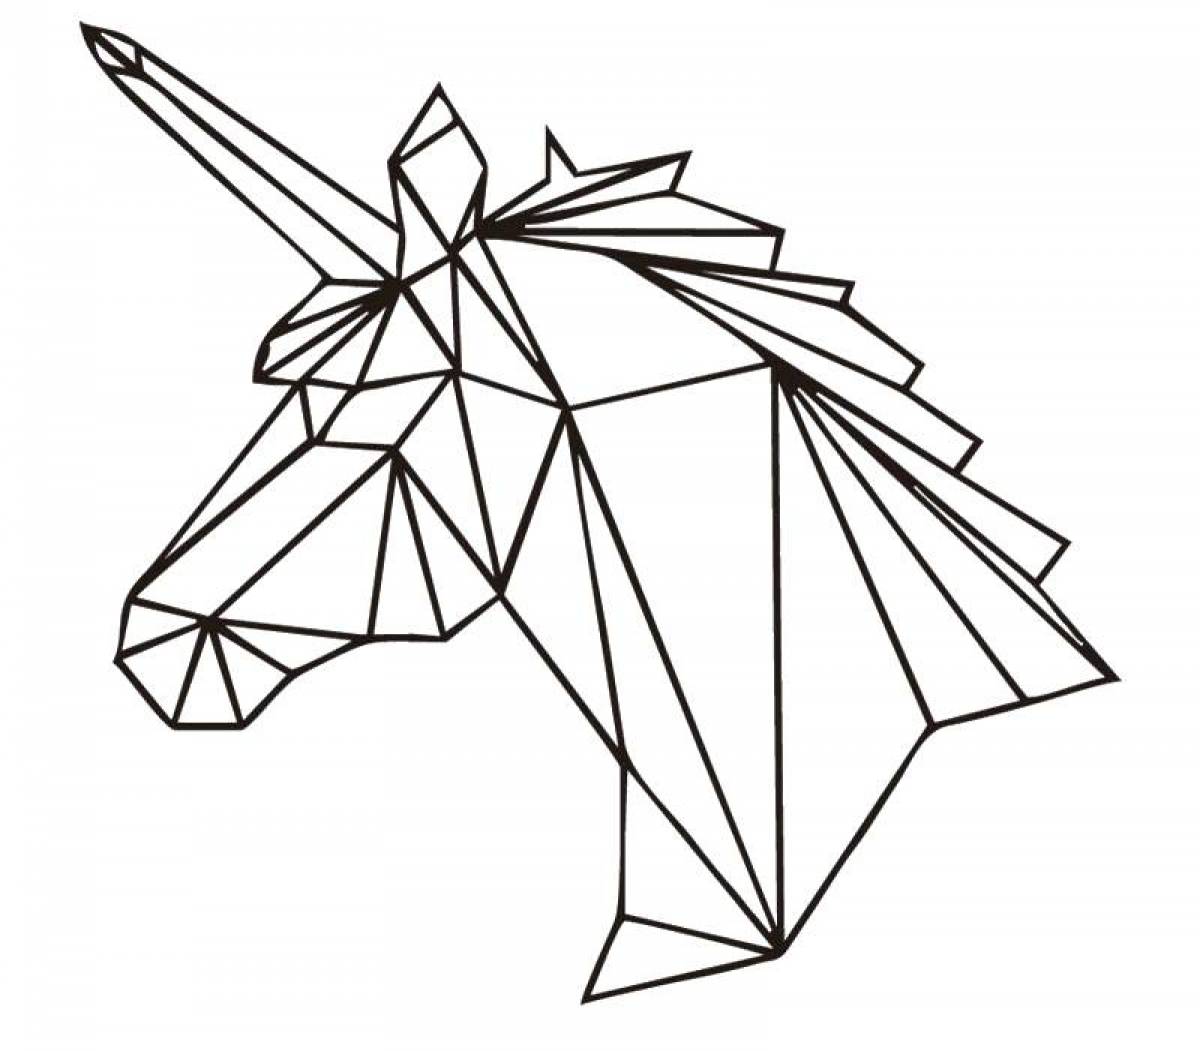 Origami unicorn